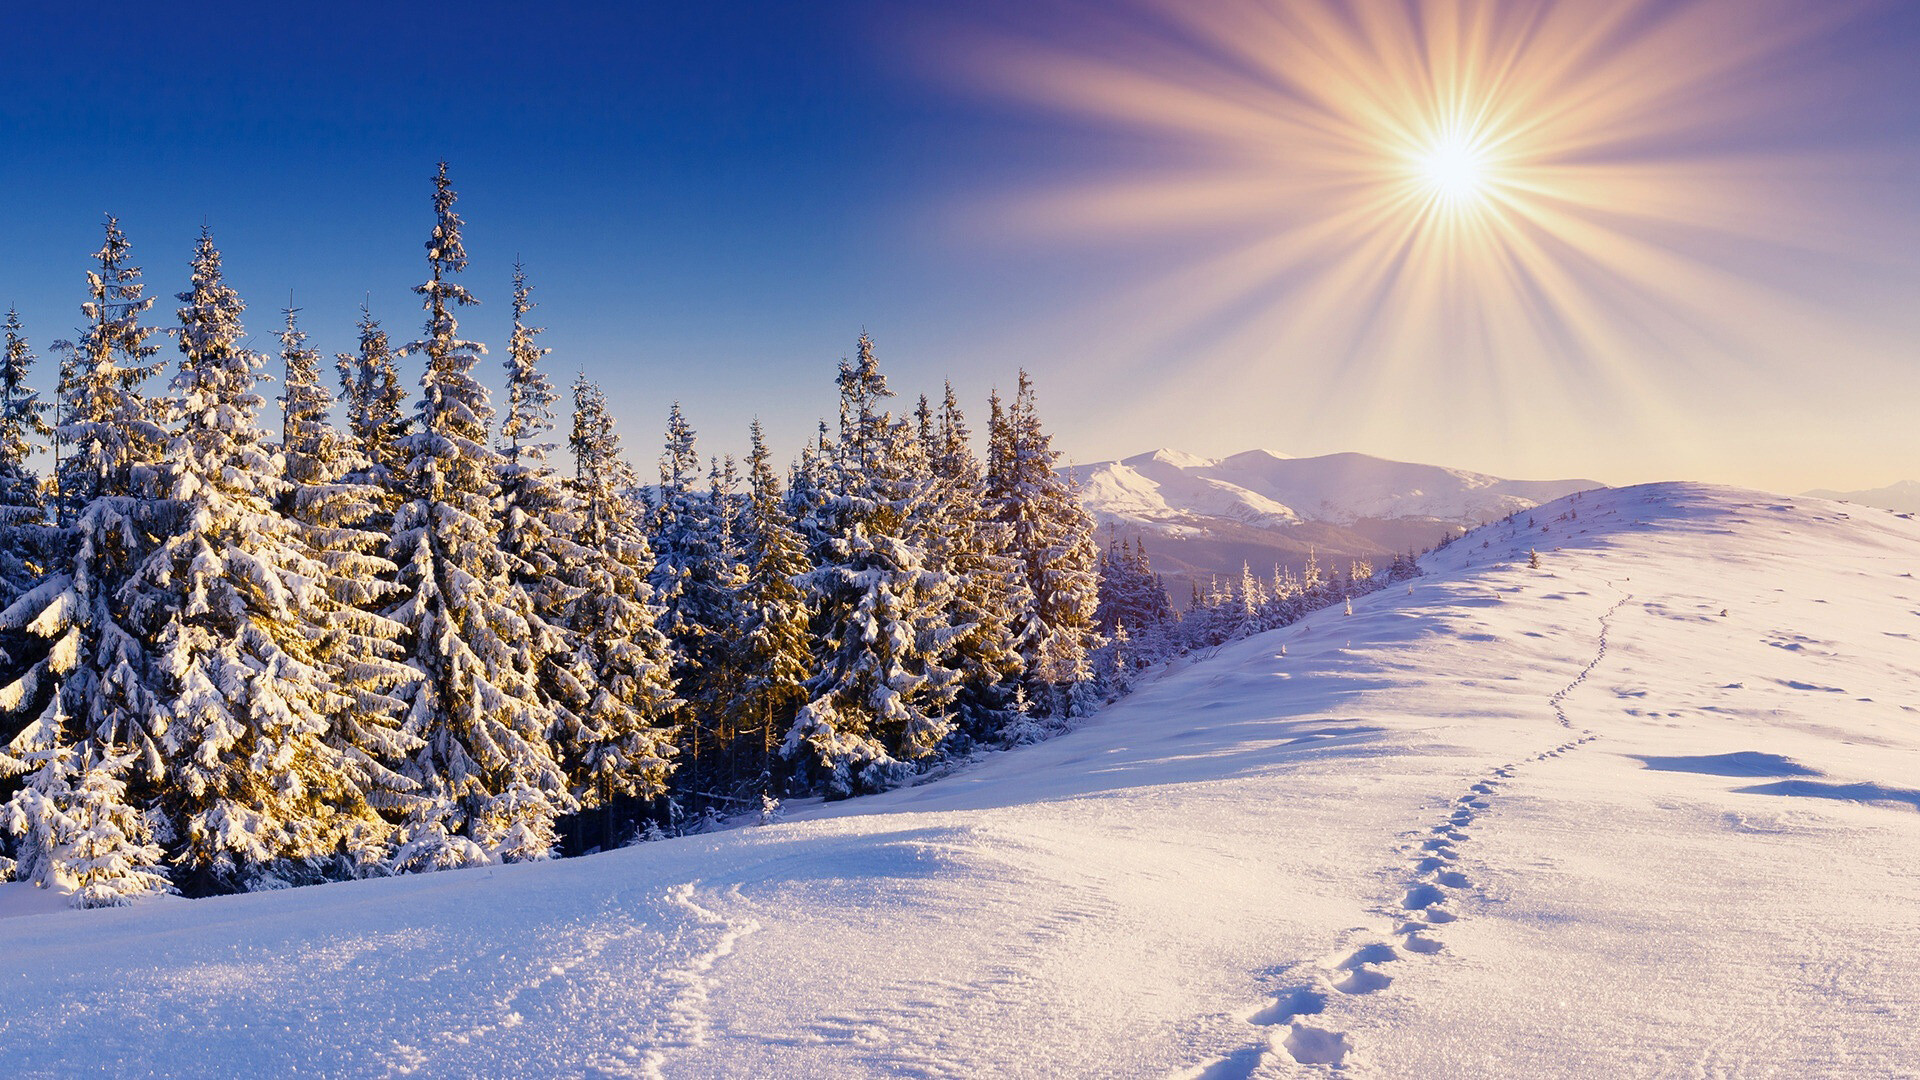 Winter sun, Soft glow, Frosty landscape, Seasonal warmth, 1920x1080 Full HD Desktop